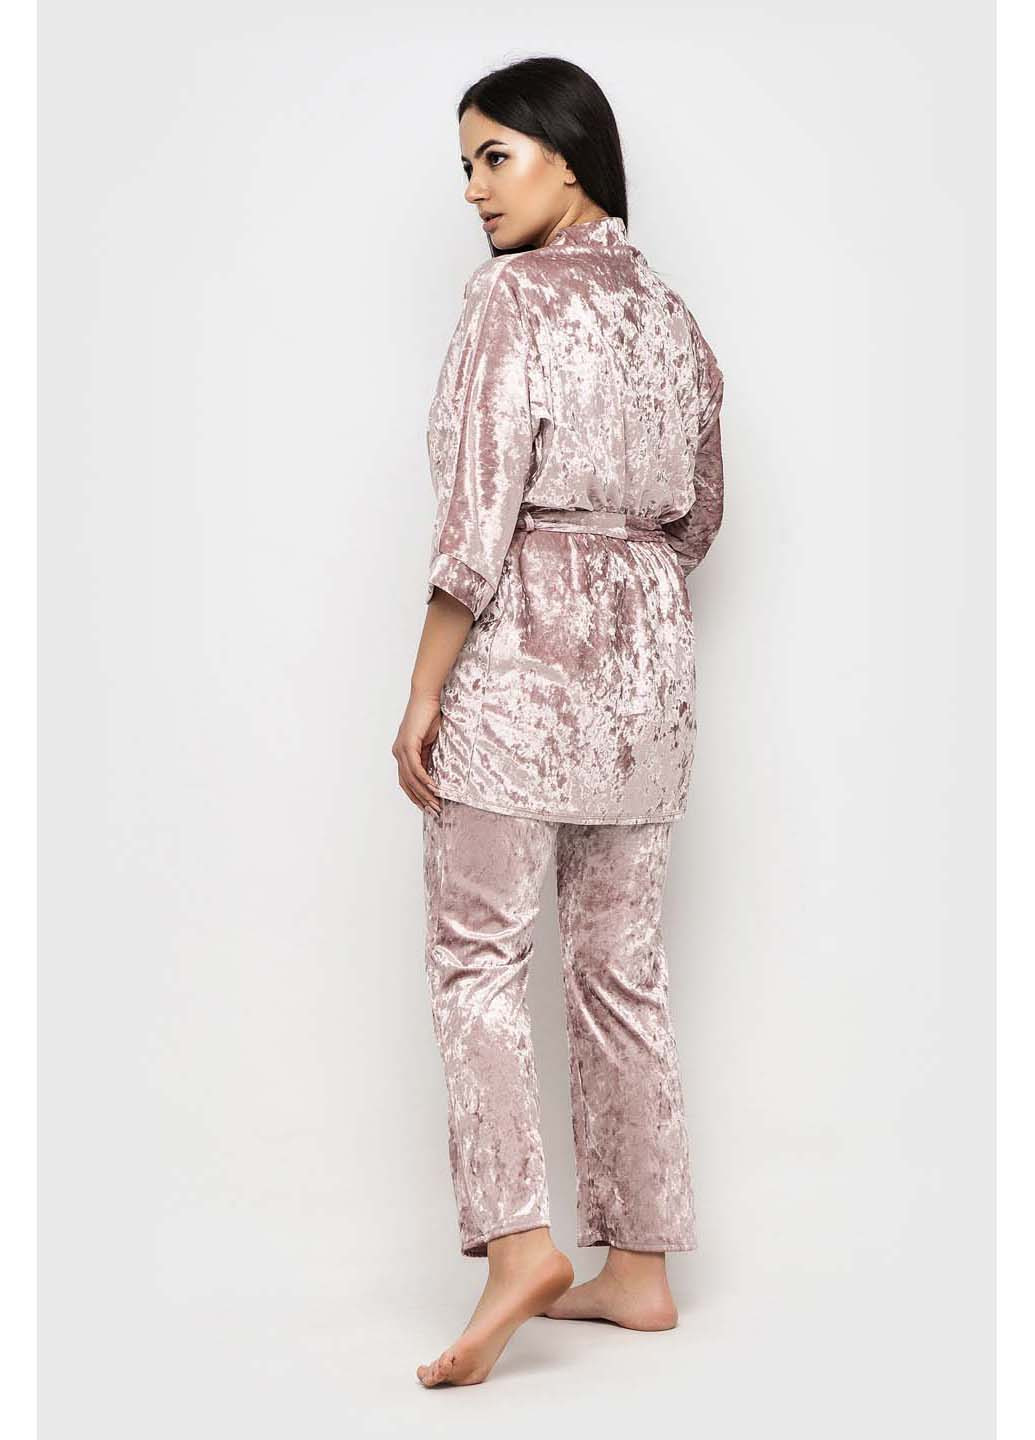 Розовый демисезонный комплект халат + майка + брюки Ghazel